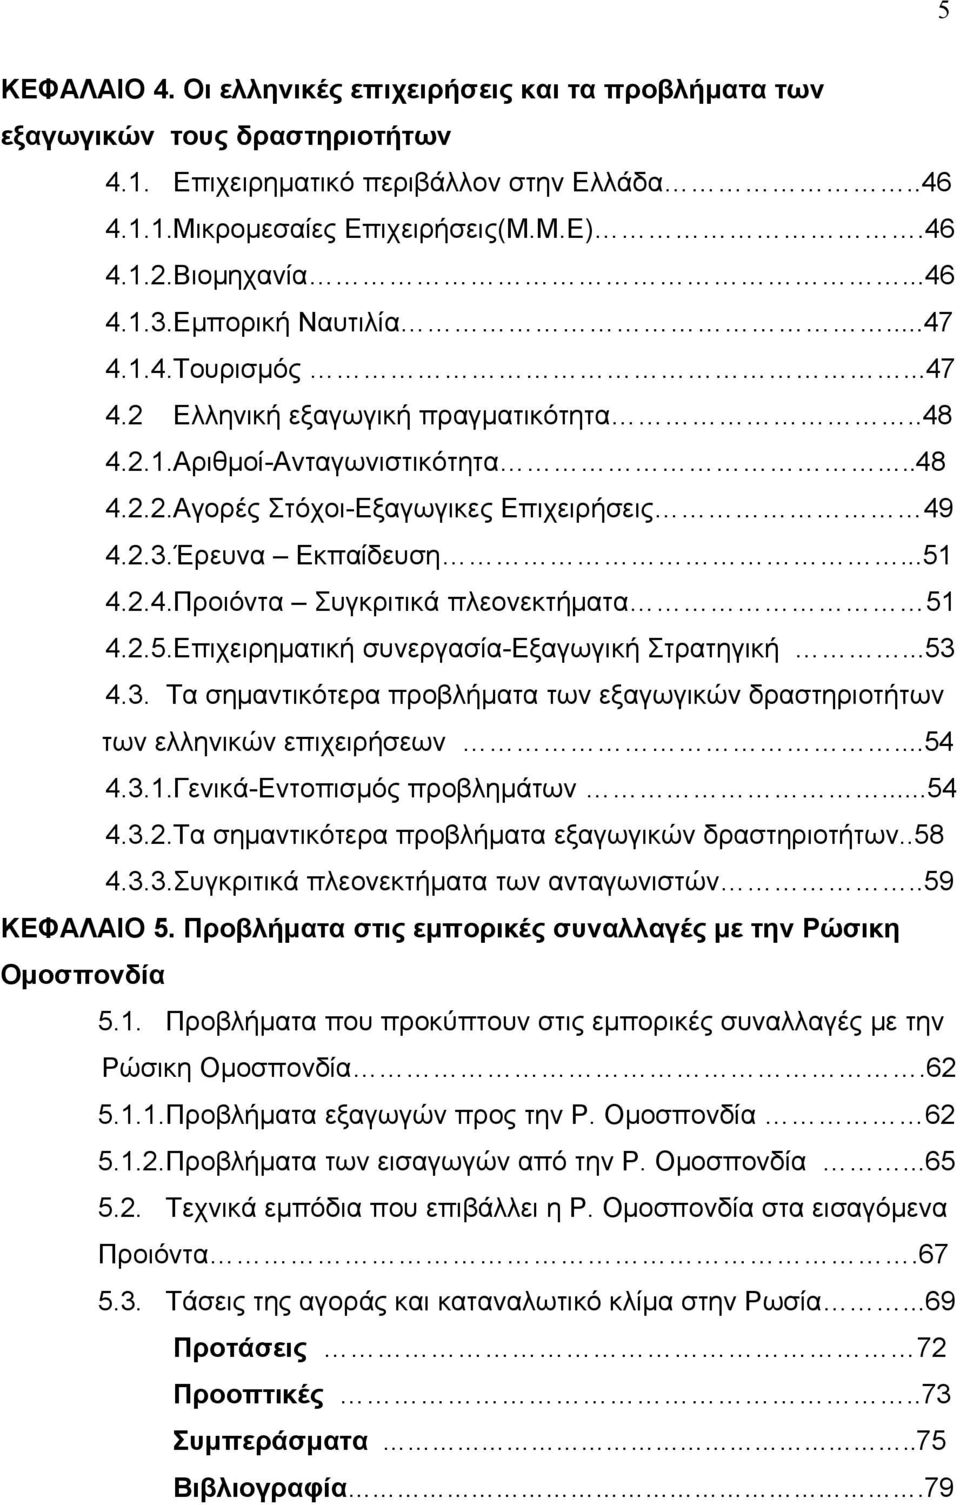 ..51 4.2.4.Προιόντα Συγκριτικά πλεονεκτήματα 51 4.2.5.Επιχειρηματική συνεργασία-εξαγωγική Στρατηγική...53 4.3. Τα σημαντικότερα προβλήματα των εξαγωγικών δραστηριοτήτων των ελληνικών επιχειρήσεων.